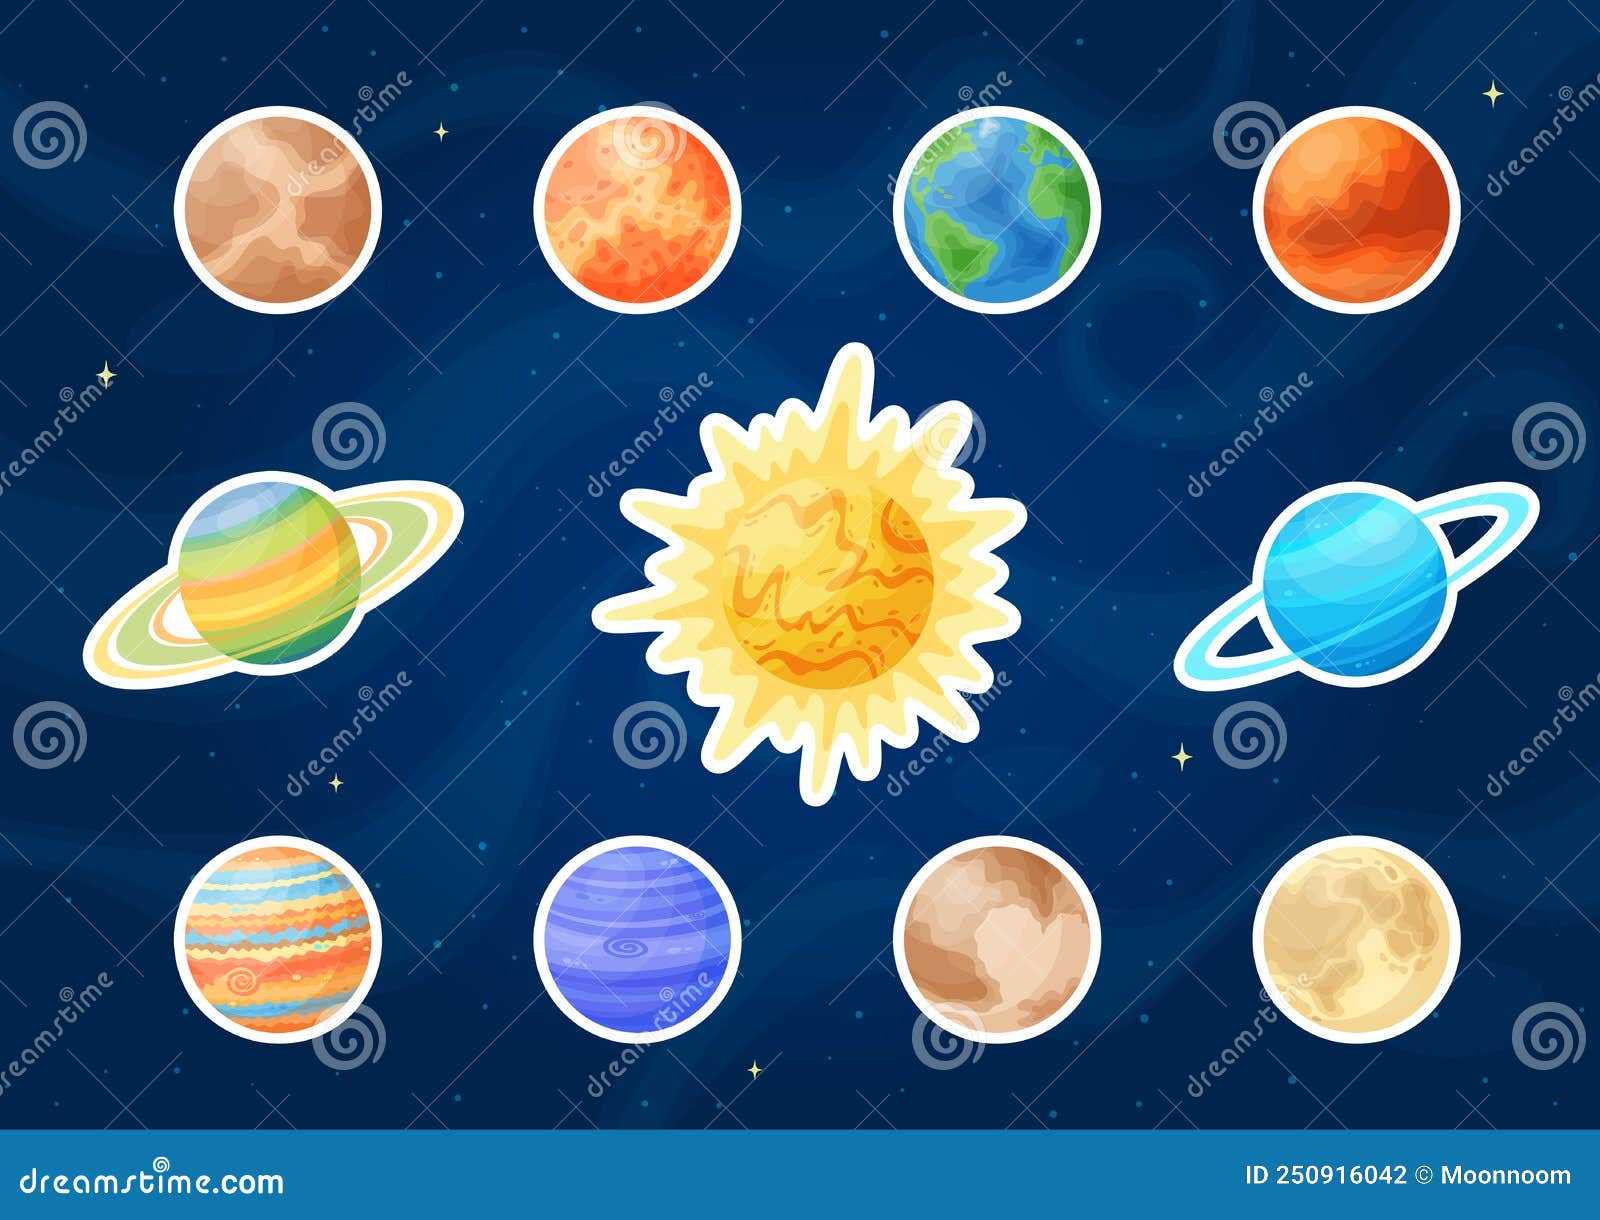 Pegatinas De Los Planetas De Caricatura Solar Y Del Sistema Solar